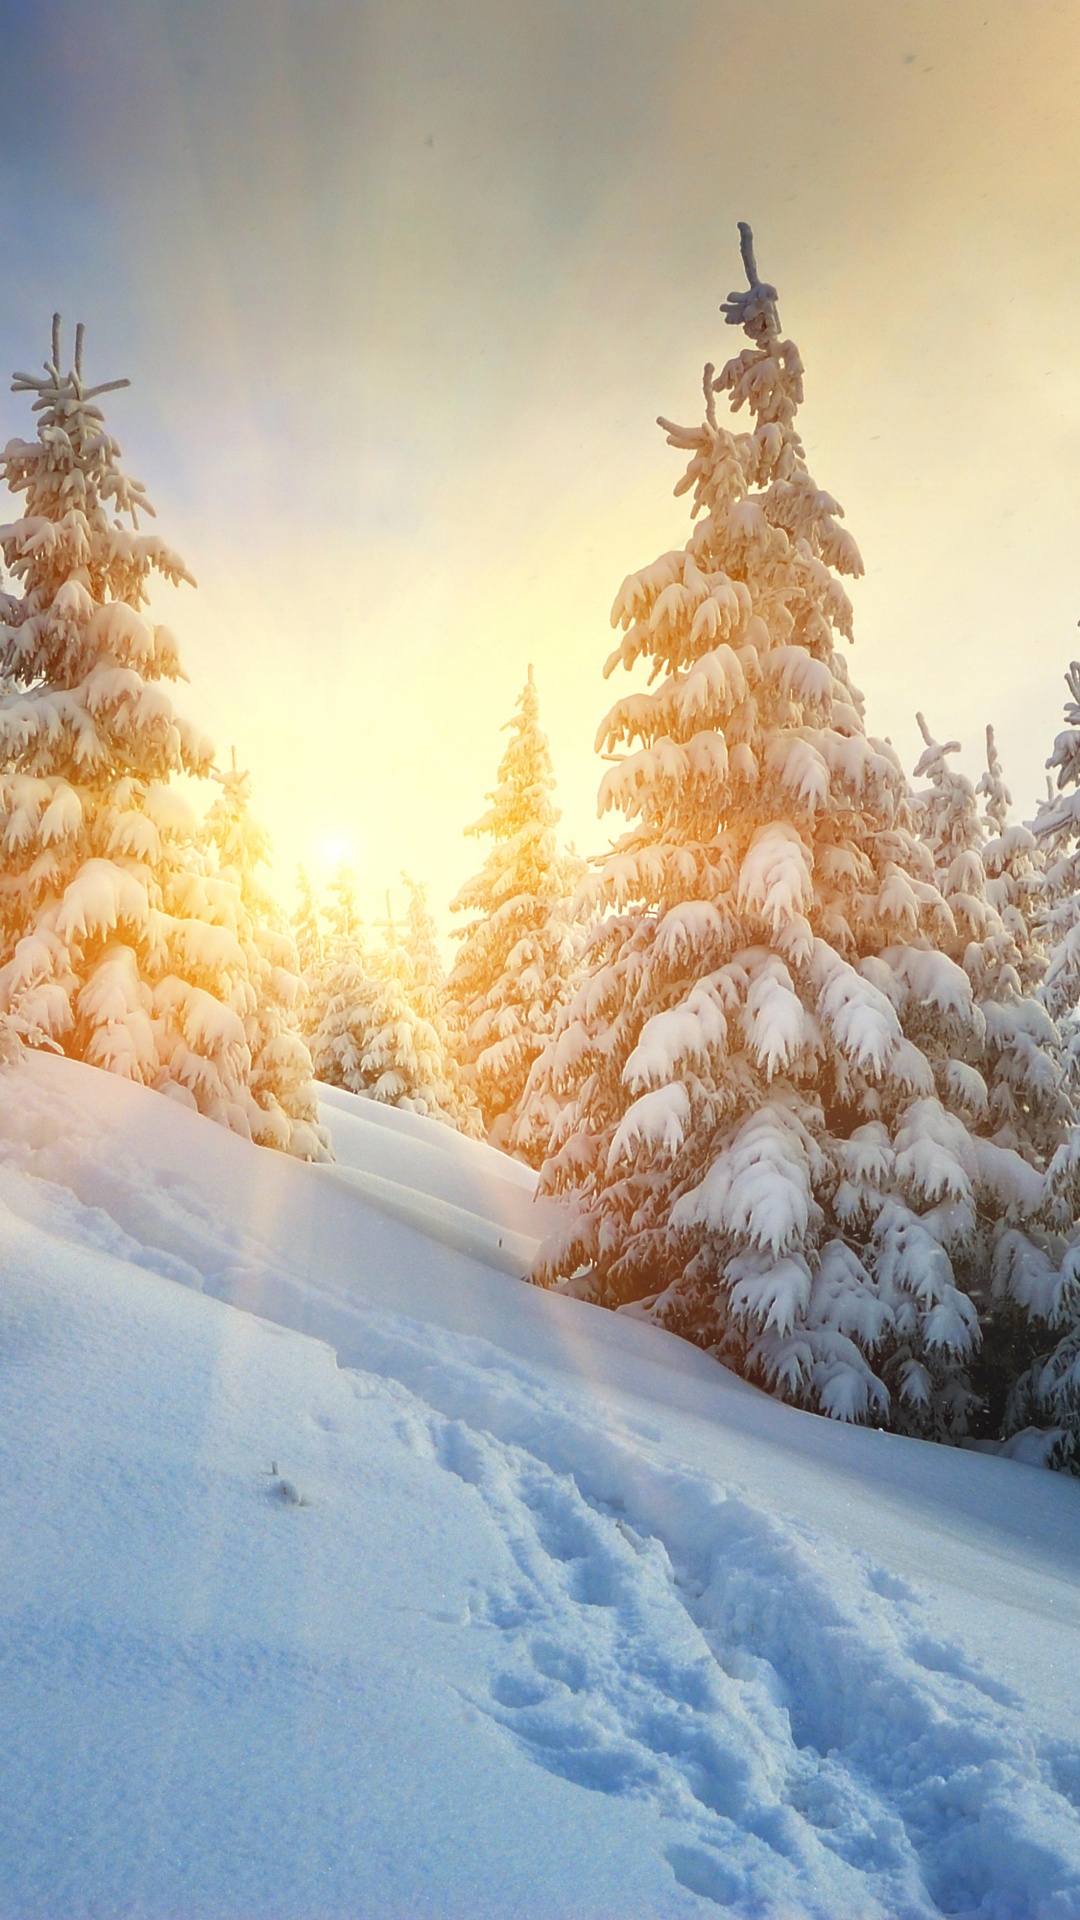 冬天, 冻结, 云杉, 天空, 松的家庭 壁纸 1080x1920 允许